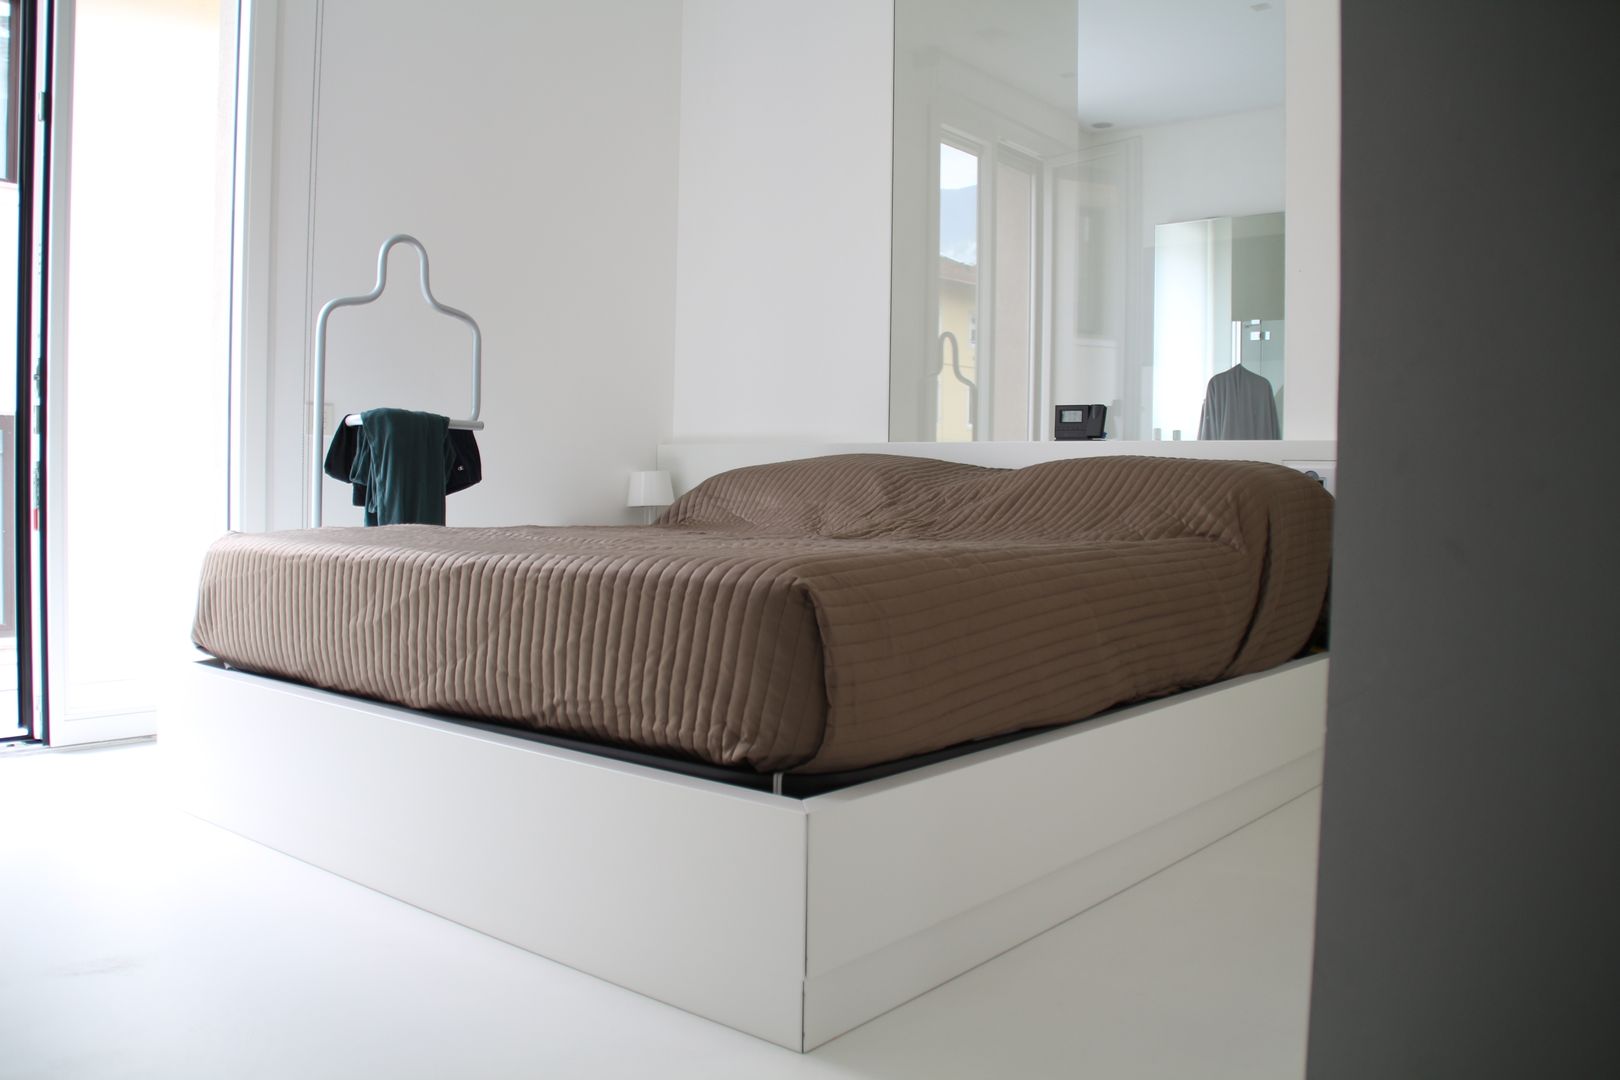 TOTAL WHITE, Serenella Pari design Serenella Pari design Dormitorios de estilo minimalista